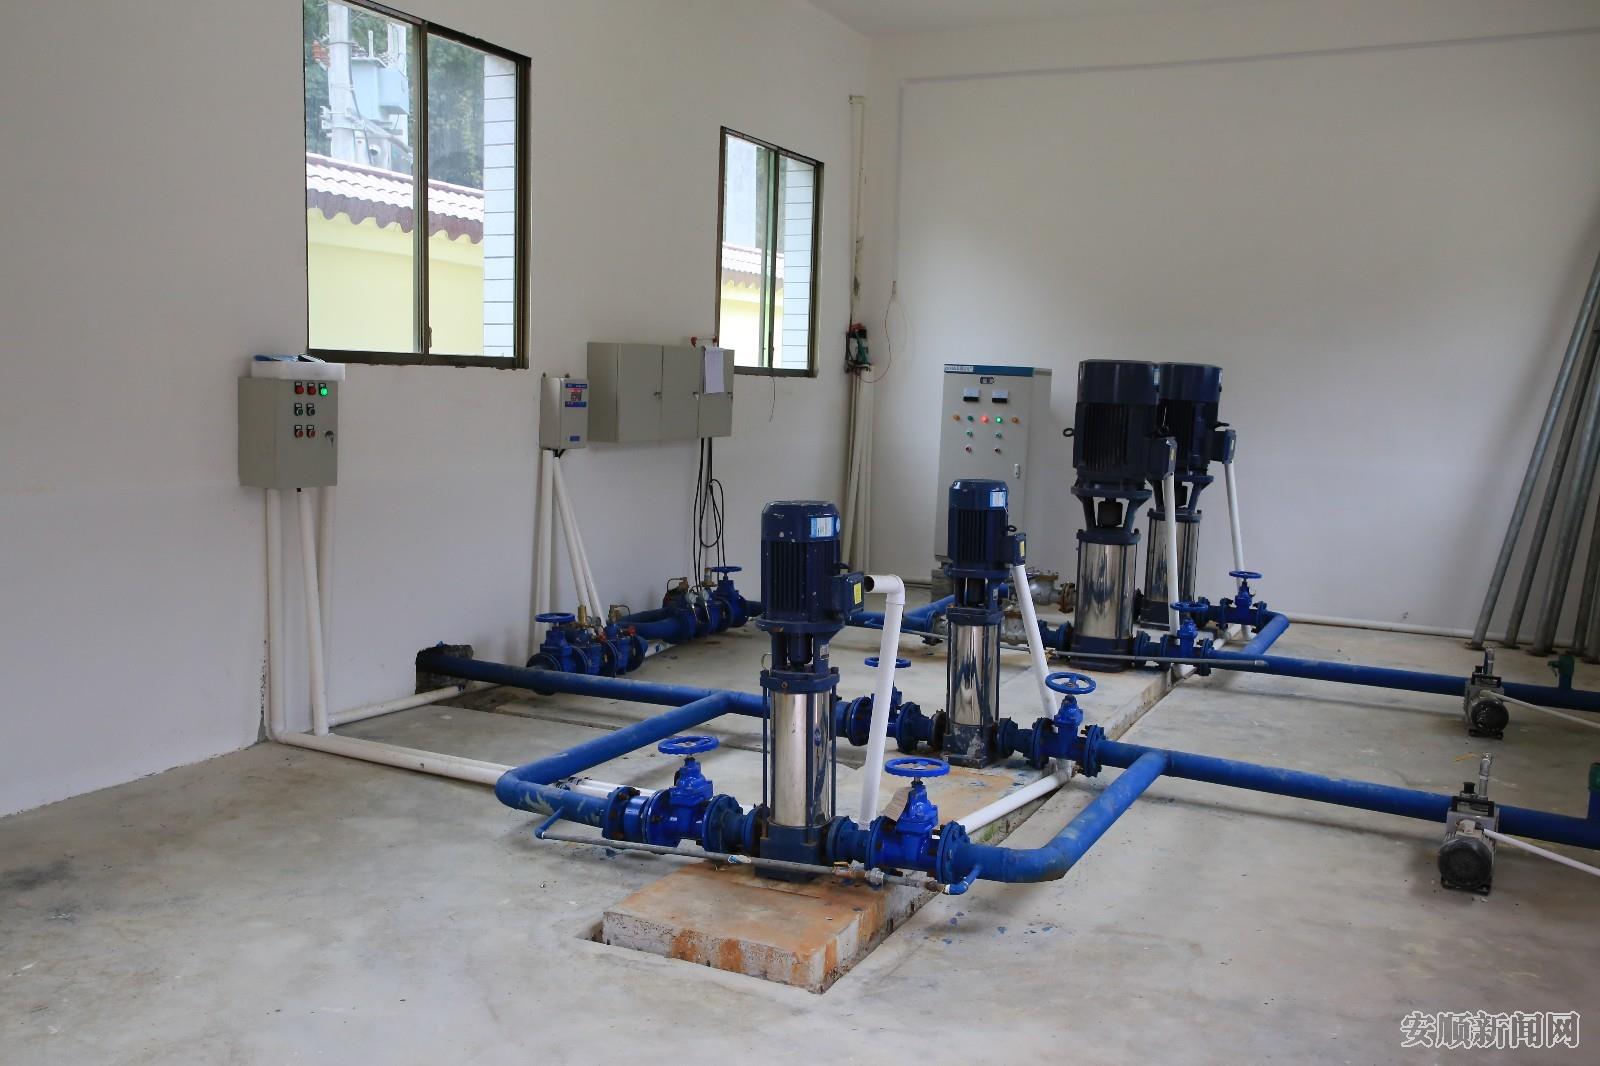 镇宁自治县水务局在沙子乡实施了的集镇供水工程，图为抽水装置。.jpg